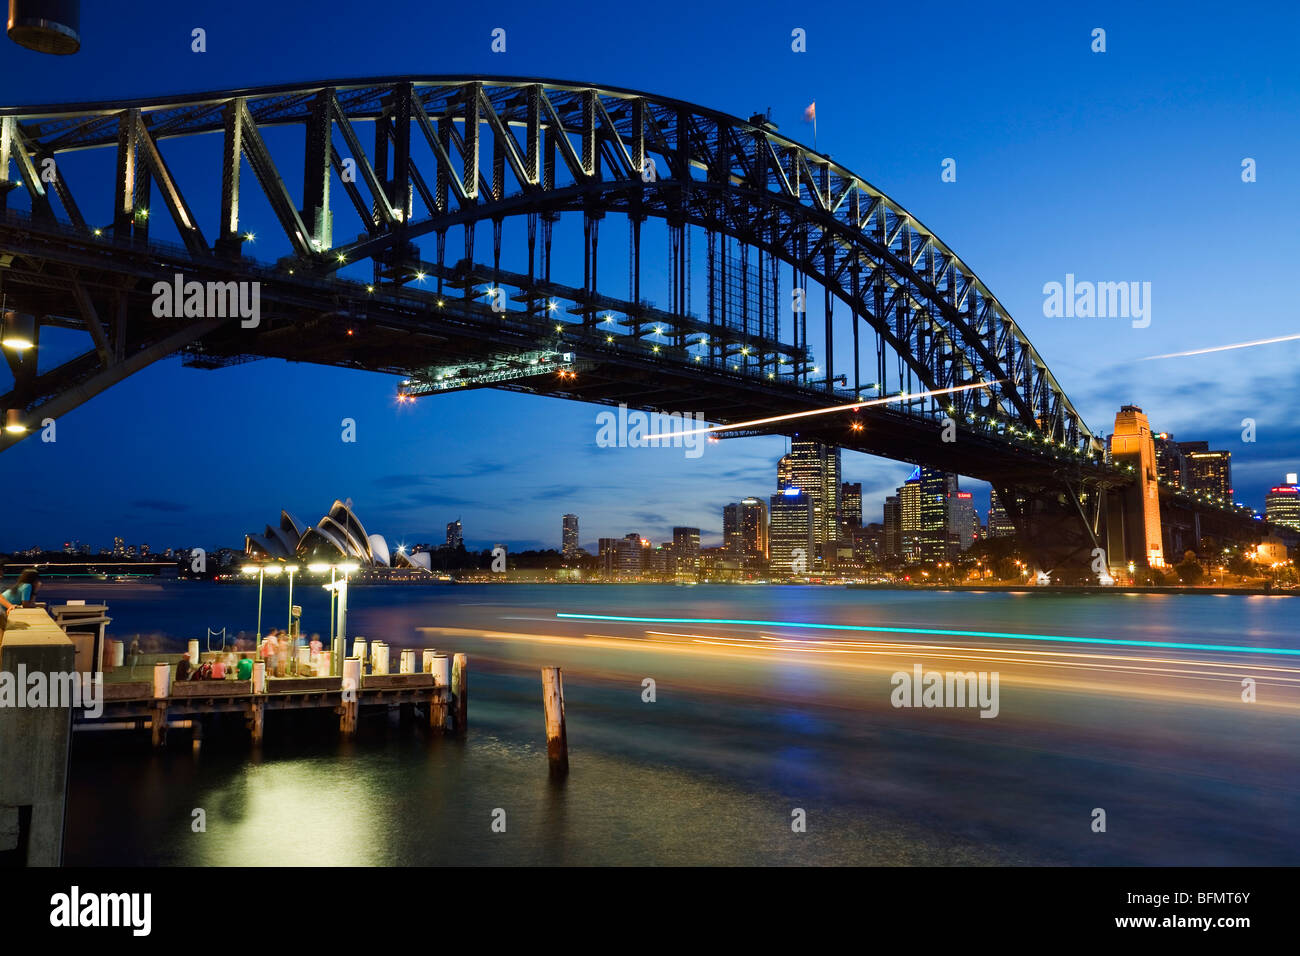 L'Australie, New South Wales, Sydney. Les sentiers de la lumière d'un ferry sur le port de Sydney, avec le Harbour Bridge et l'Opéra. Banque D'Images